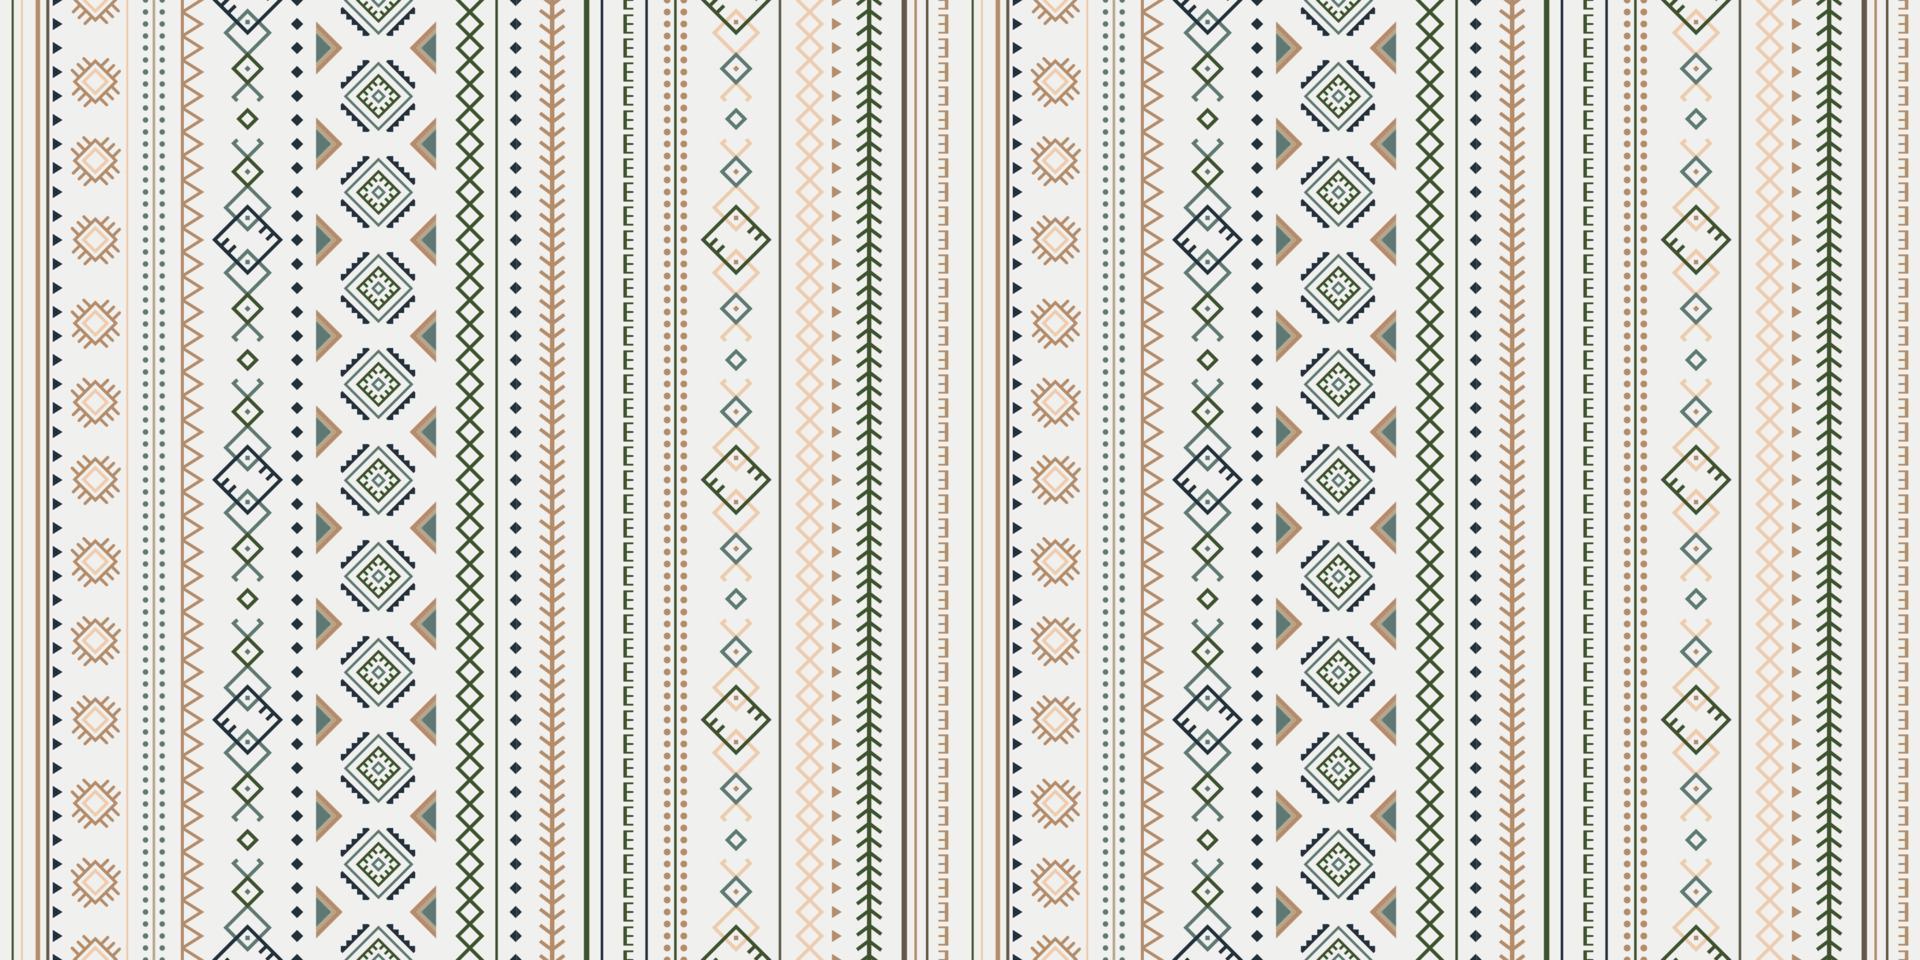 patrón geométrico vectorial sin costuras. dibujo étnico tribal vintage. papel tapiz, diseño de telas, tela, papel, empaques, postales. vector